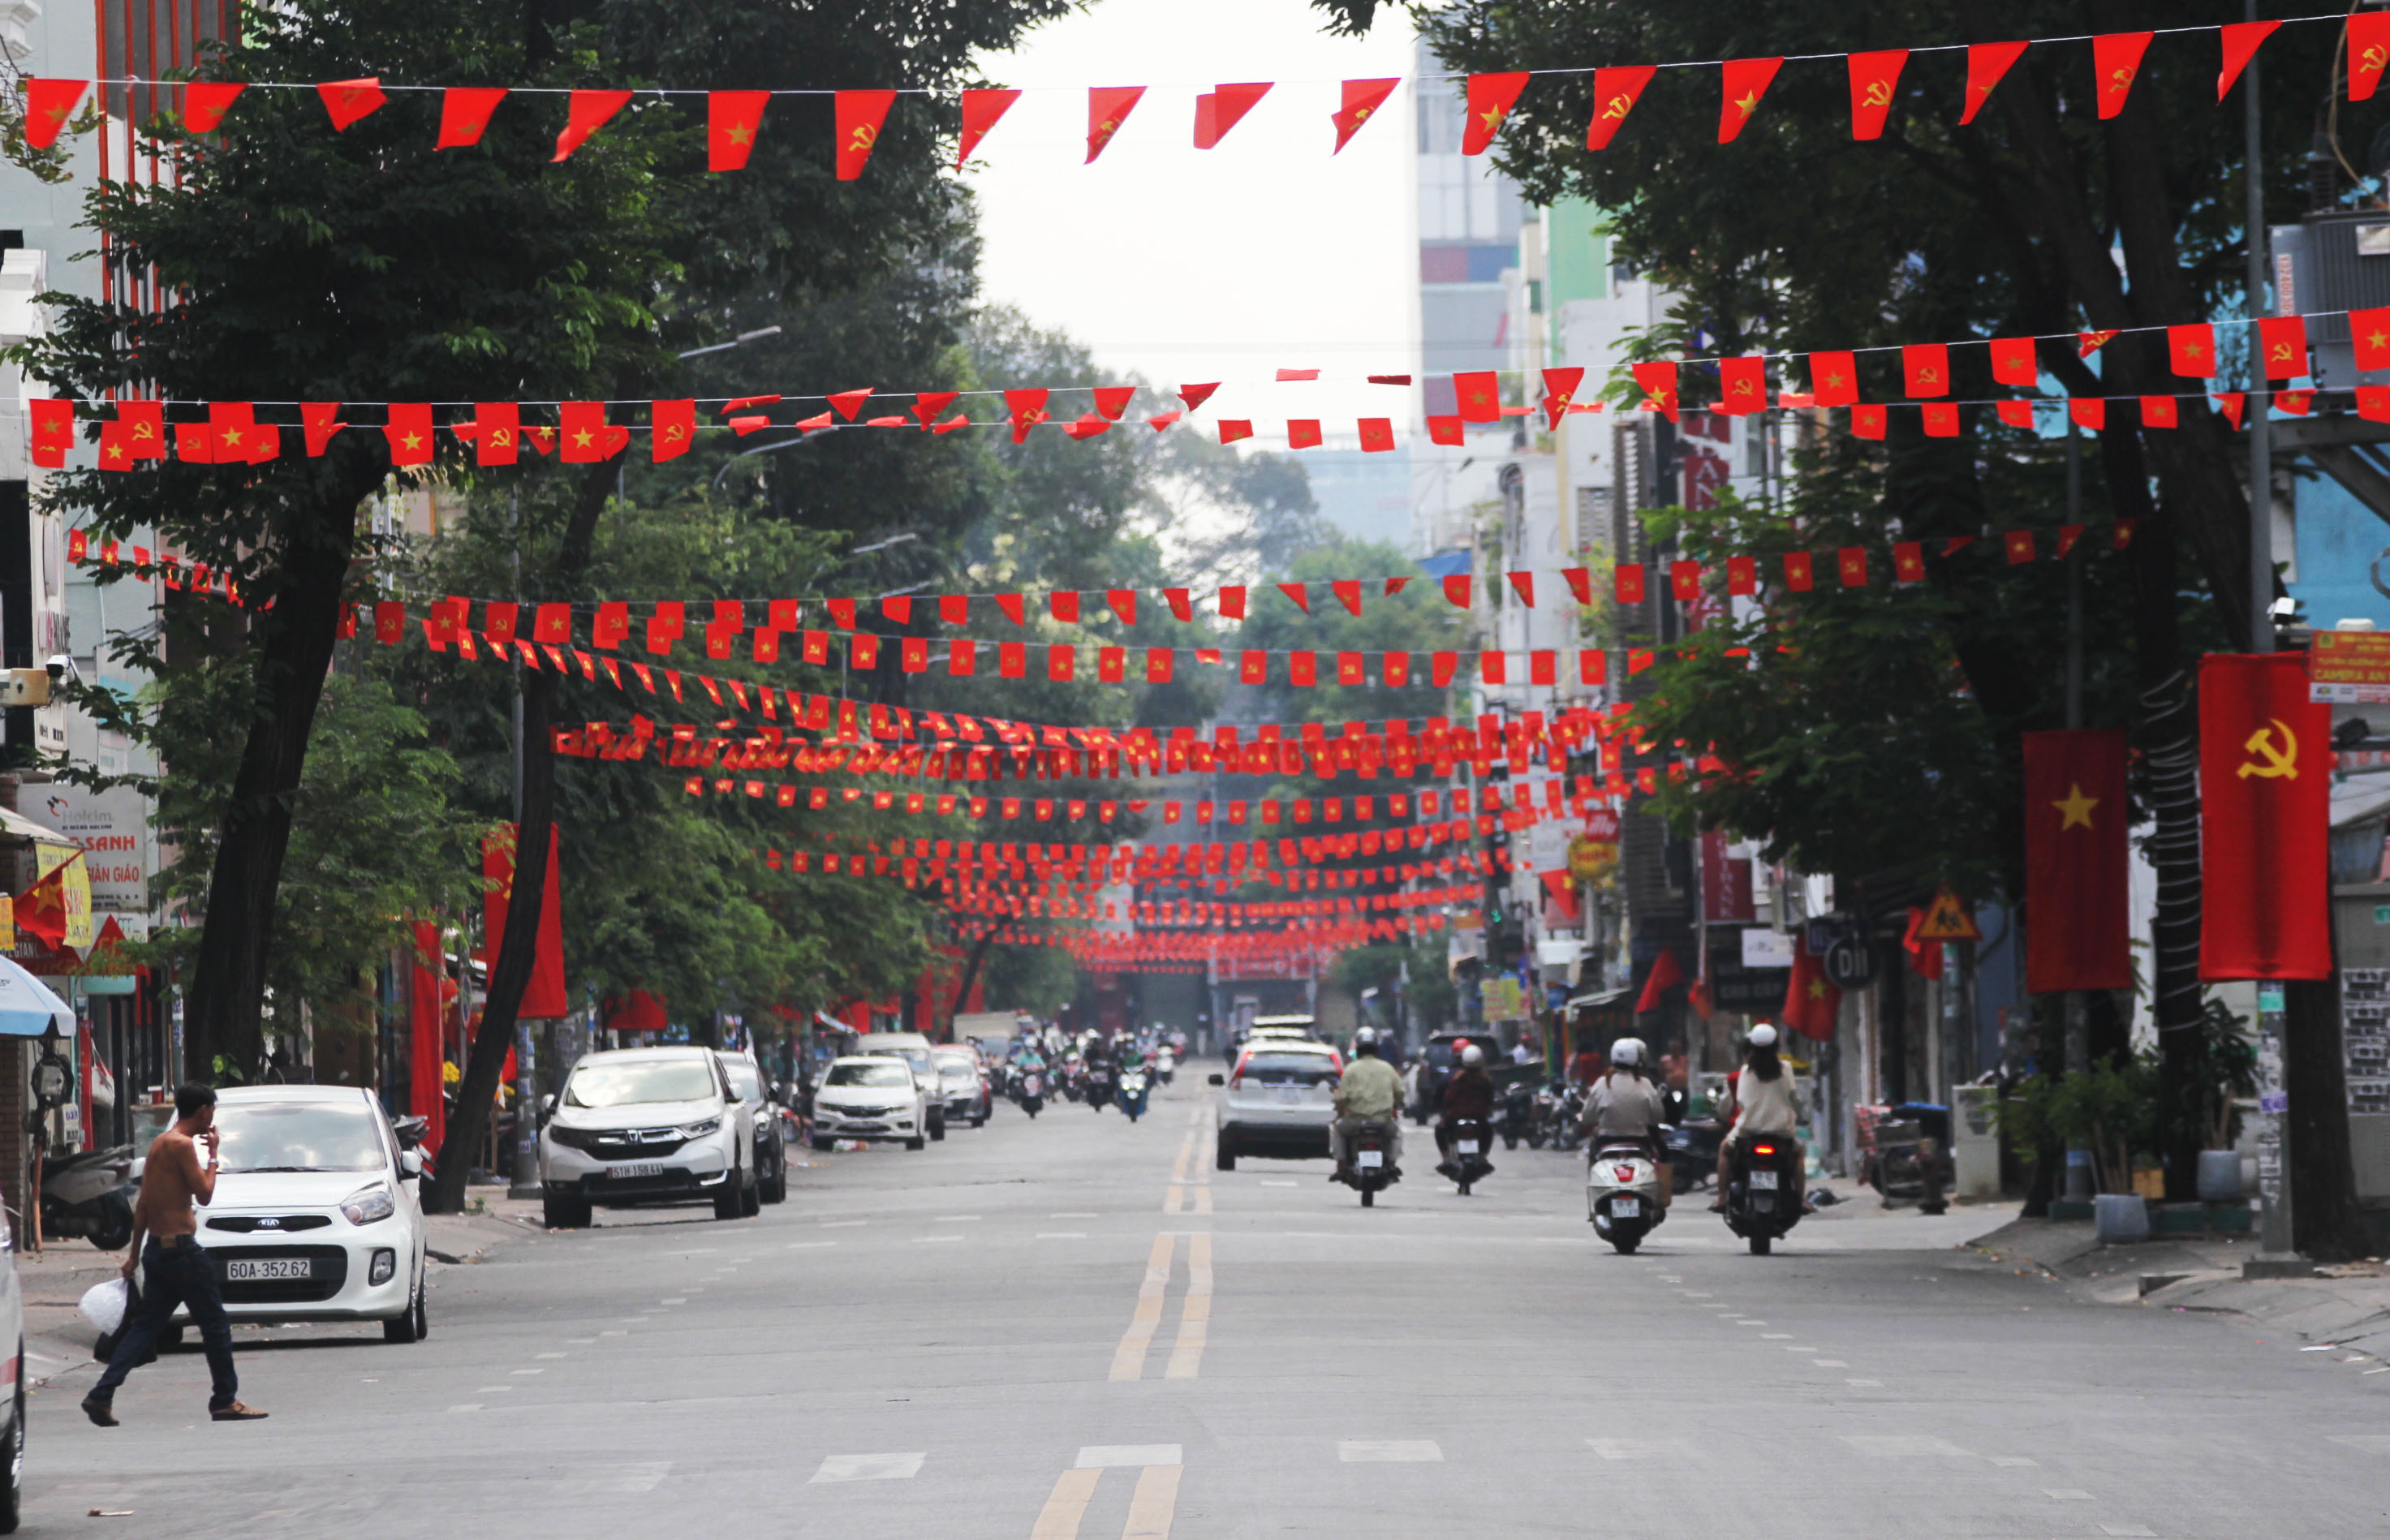 Thành Phố Hồ Chí Minh với những tòa nhà chọc trời sẽ khiến bạn phải trầm trồ thán phục. Hãy cùng tìm hiểu những vùng đất nổi tiếng của TPHCM qua những bức hình chụp tại đây và đón nhận sự bất ngờ mà thành phố này mang lại!